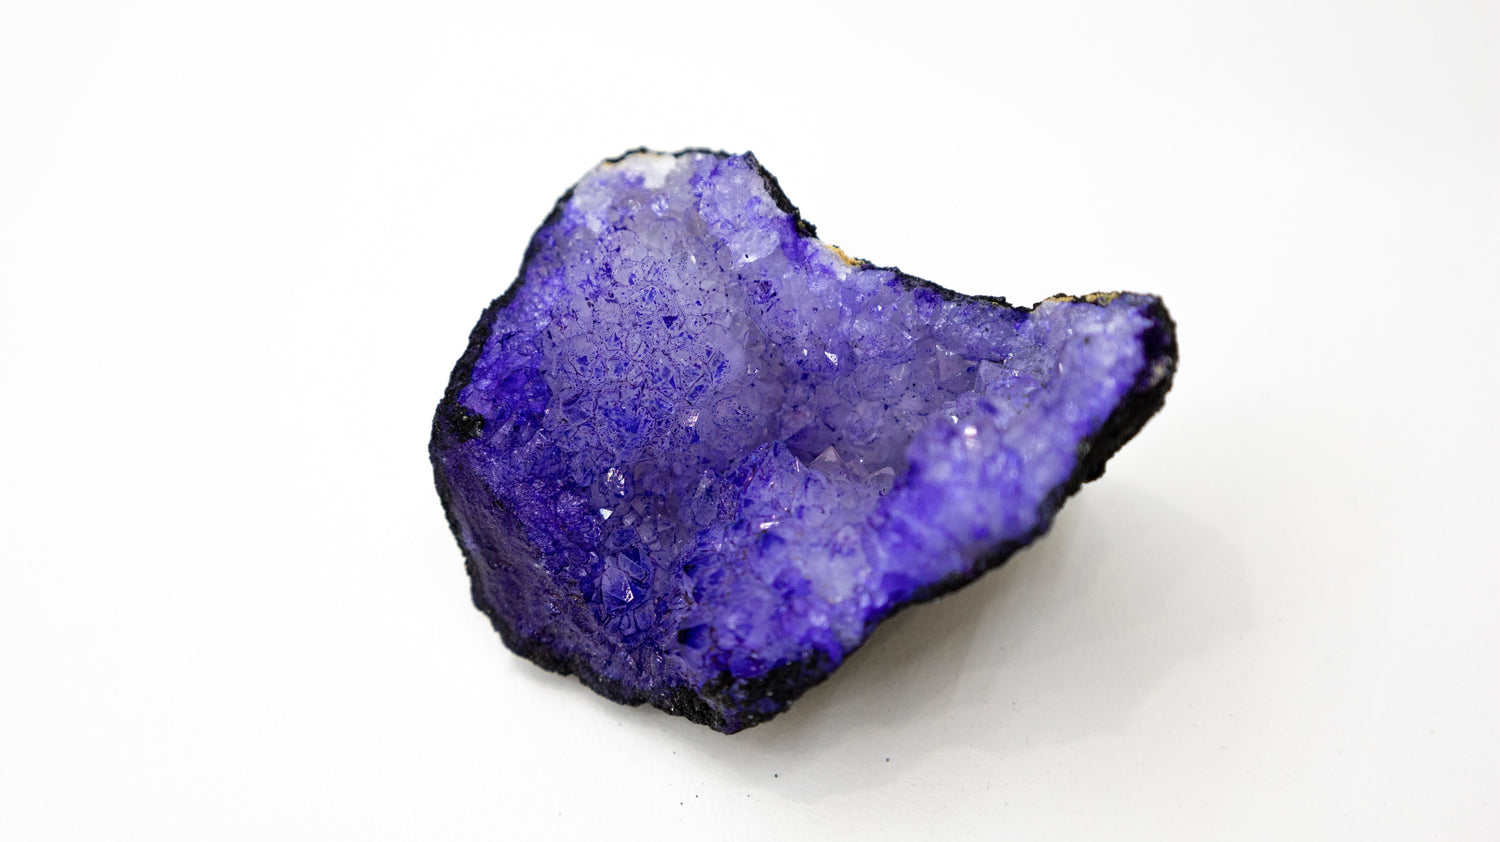 A rough gem crystal